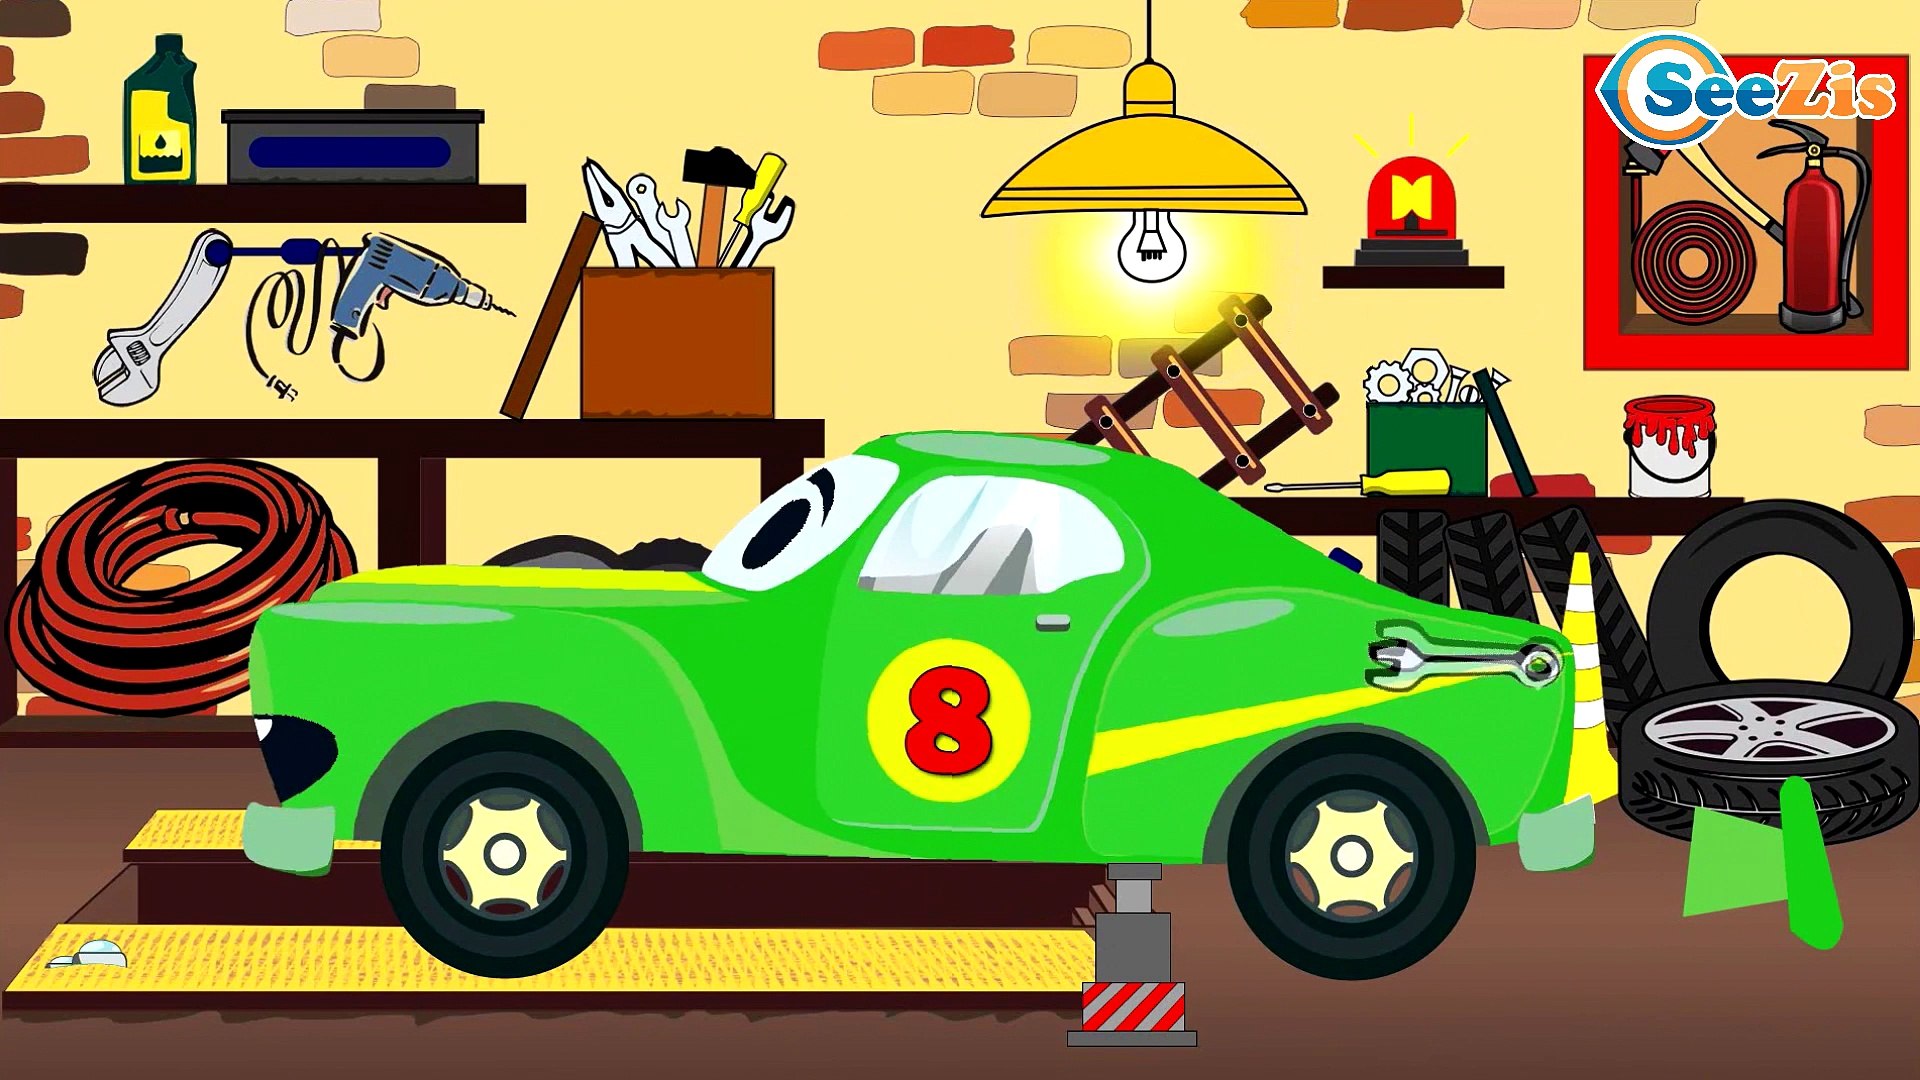 Caricaturas de carros infantiles - Carros de Carreras, Coche de Policía - Videos Para Niños